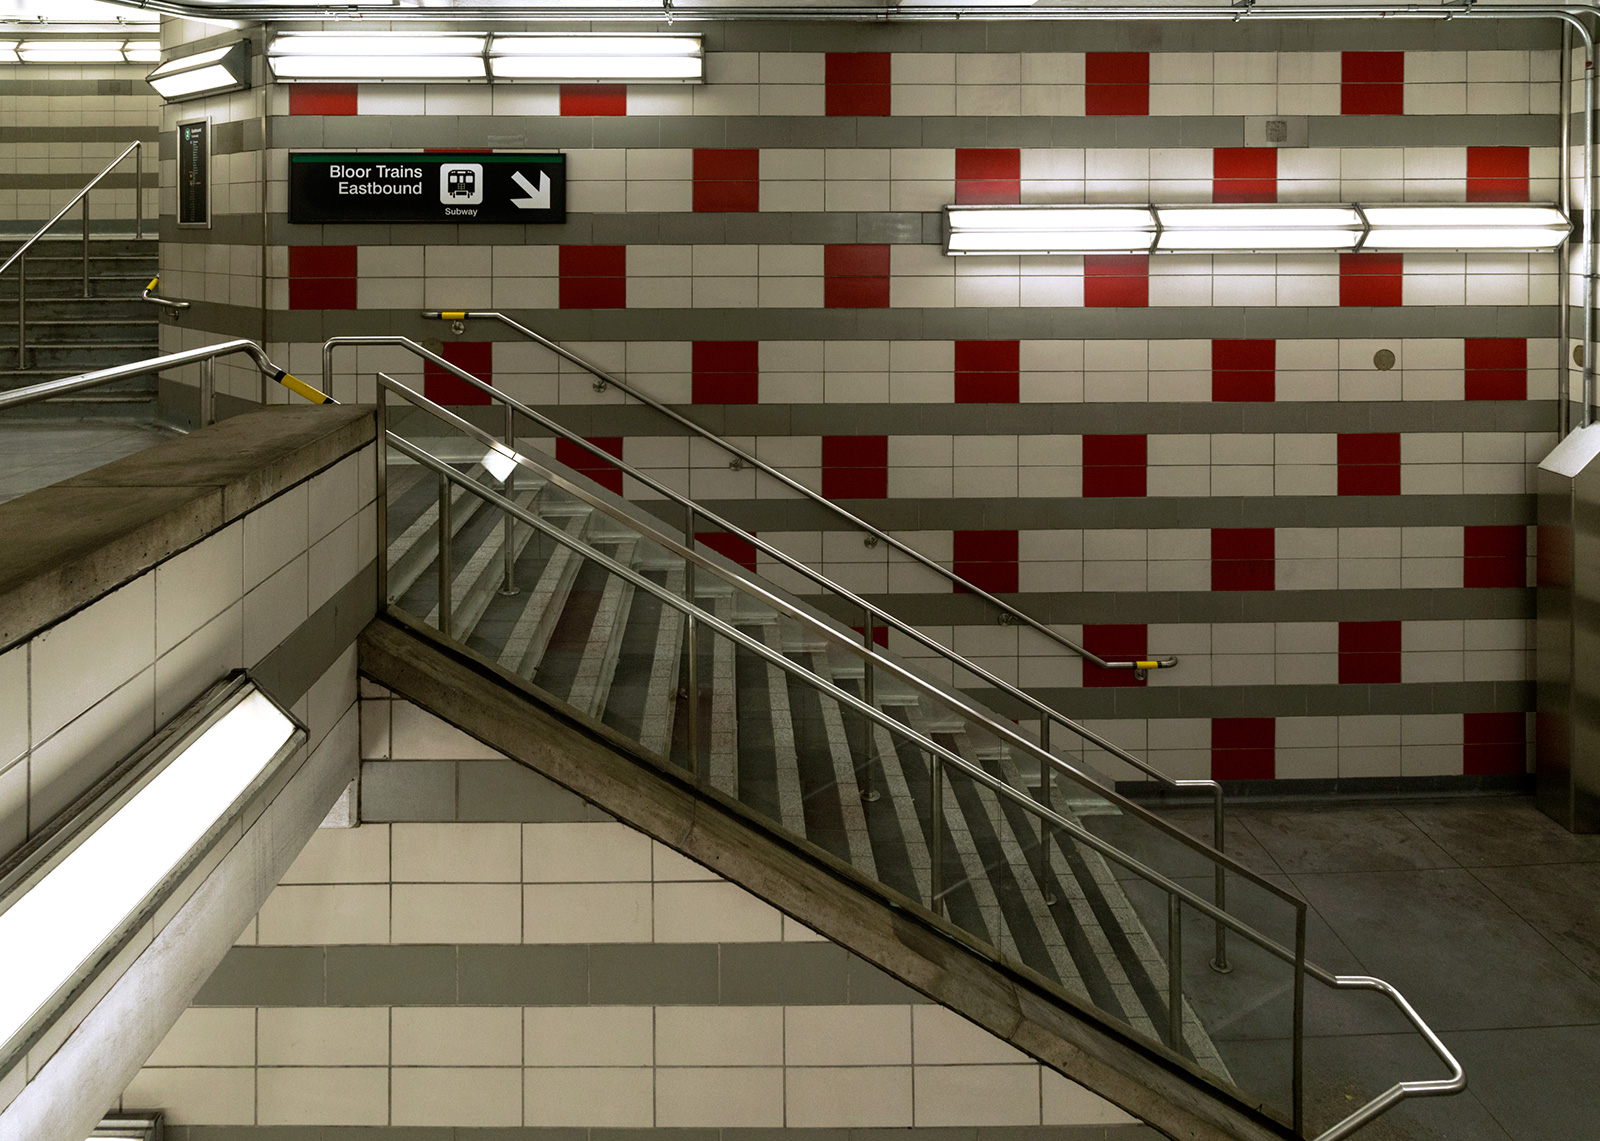 20150403. TTC Spadina subway station's stimulating secondary ent